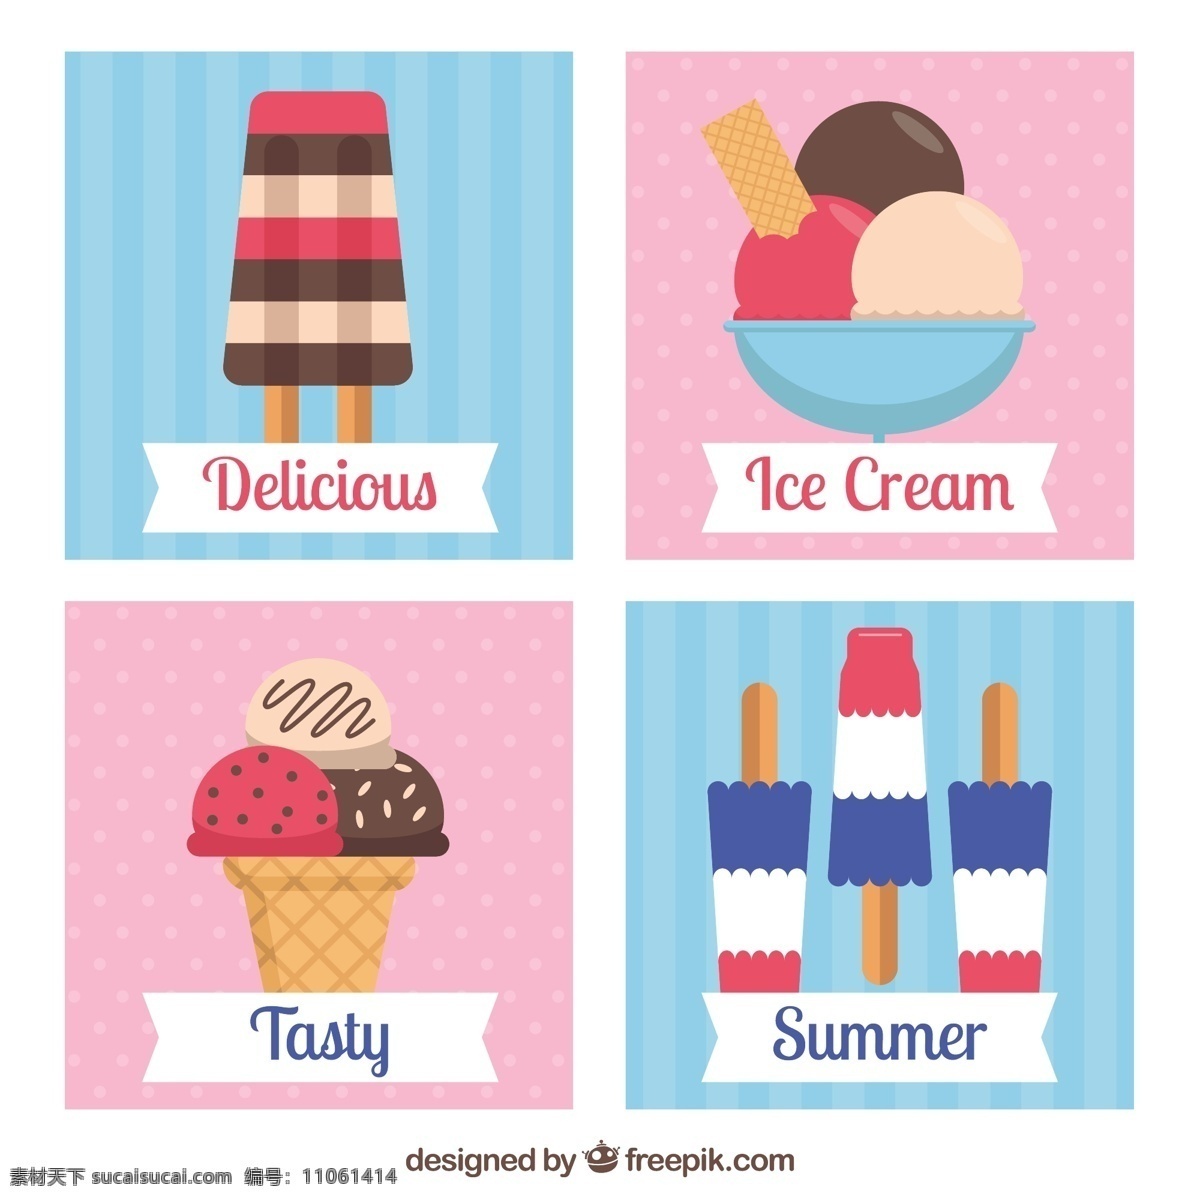 平面设计 中 可爱 怀旧 卡片 食品 夏季 复古 冰淇淋 平板 冰 甜 卡 甜点 奶油 吃 季节 收集 美味 味道 冷却